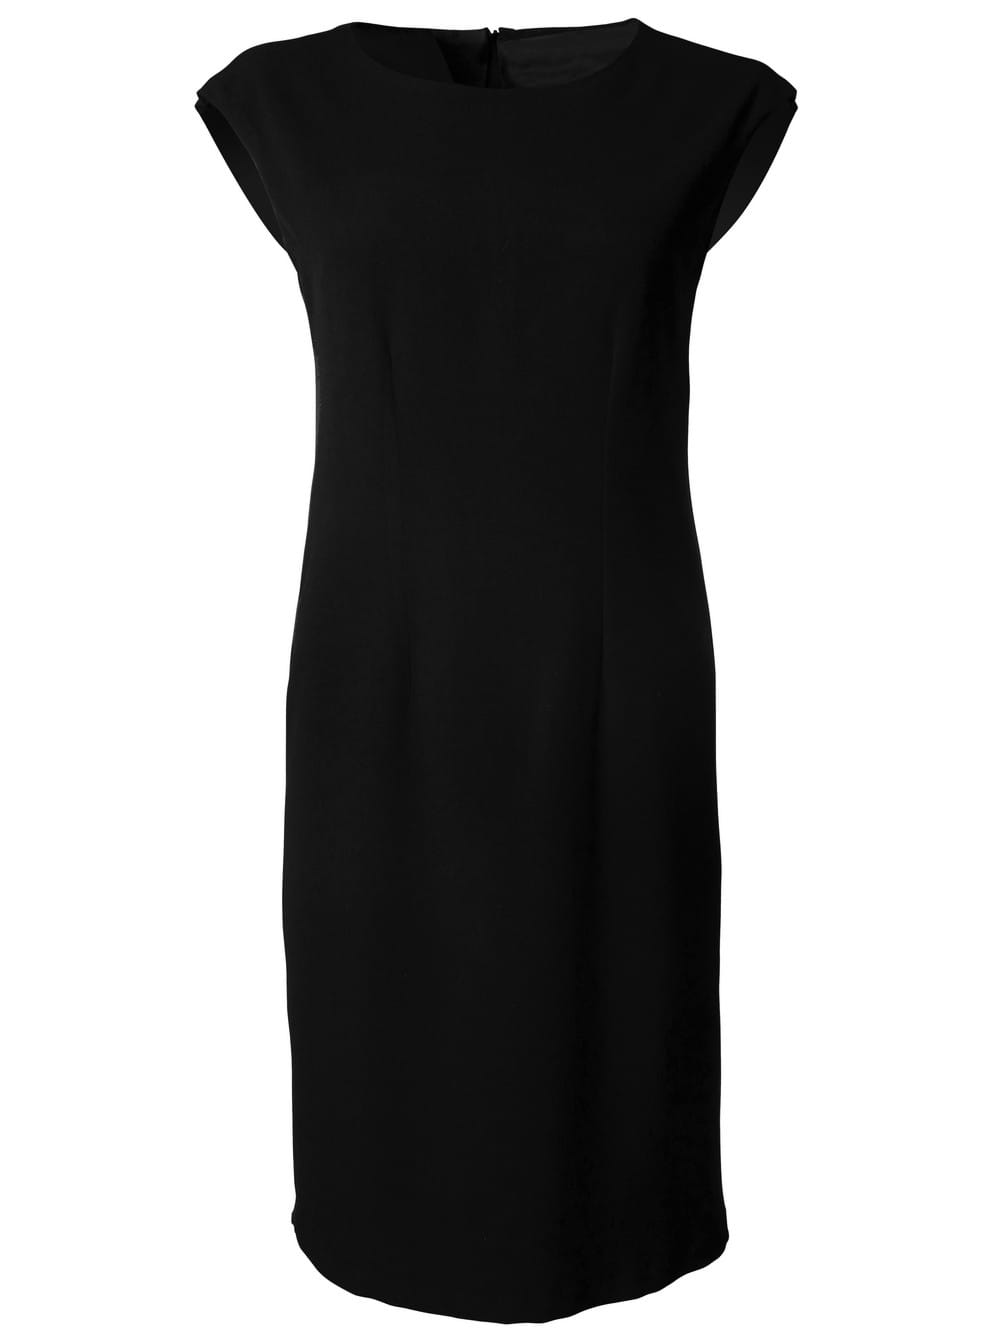 Kendal 599 S/Less Dress - Black